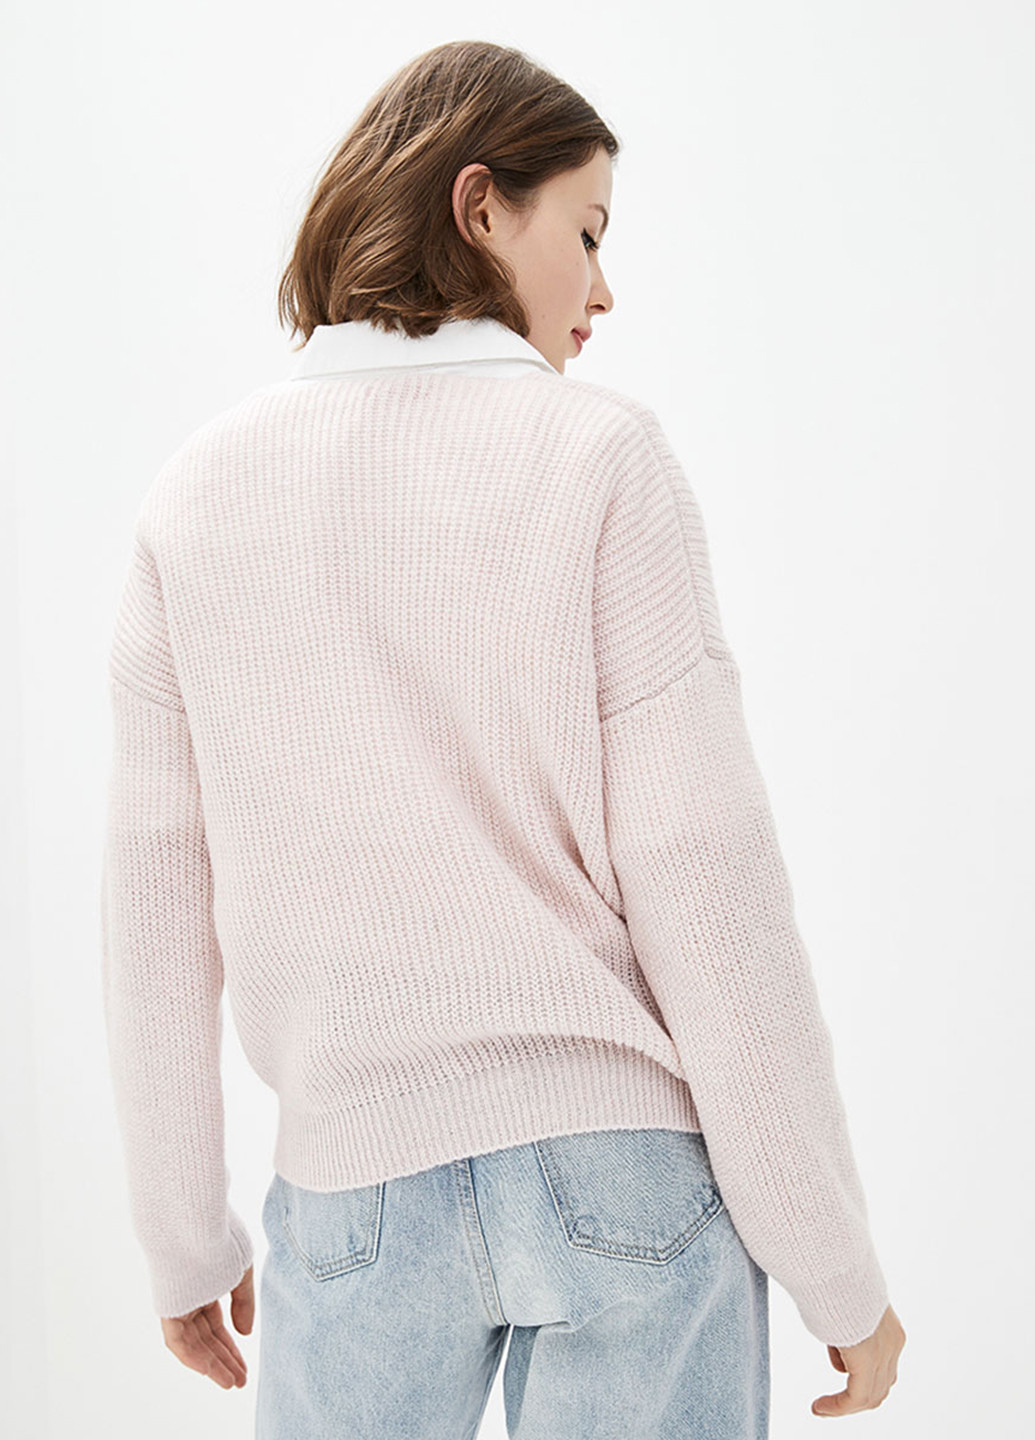 Светло-розовый демисезонный пуловер пуловер Sewel